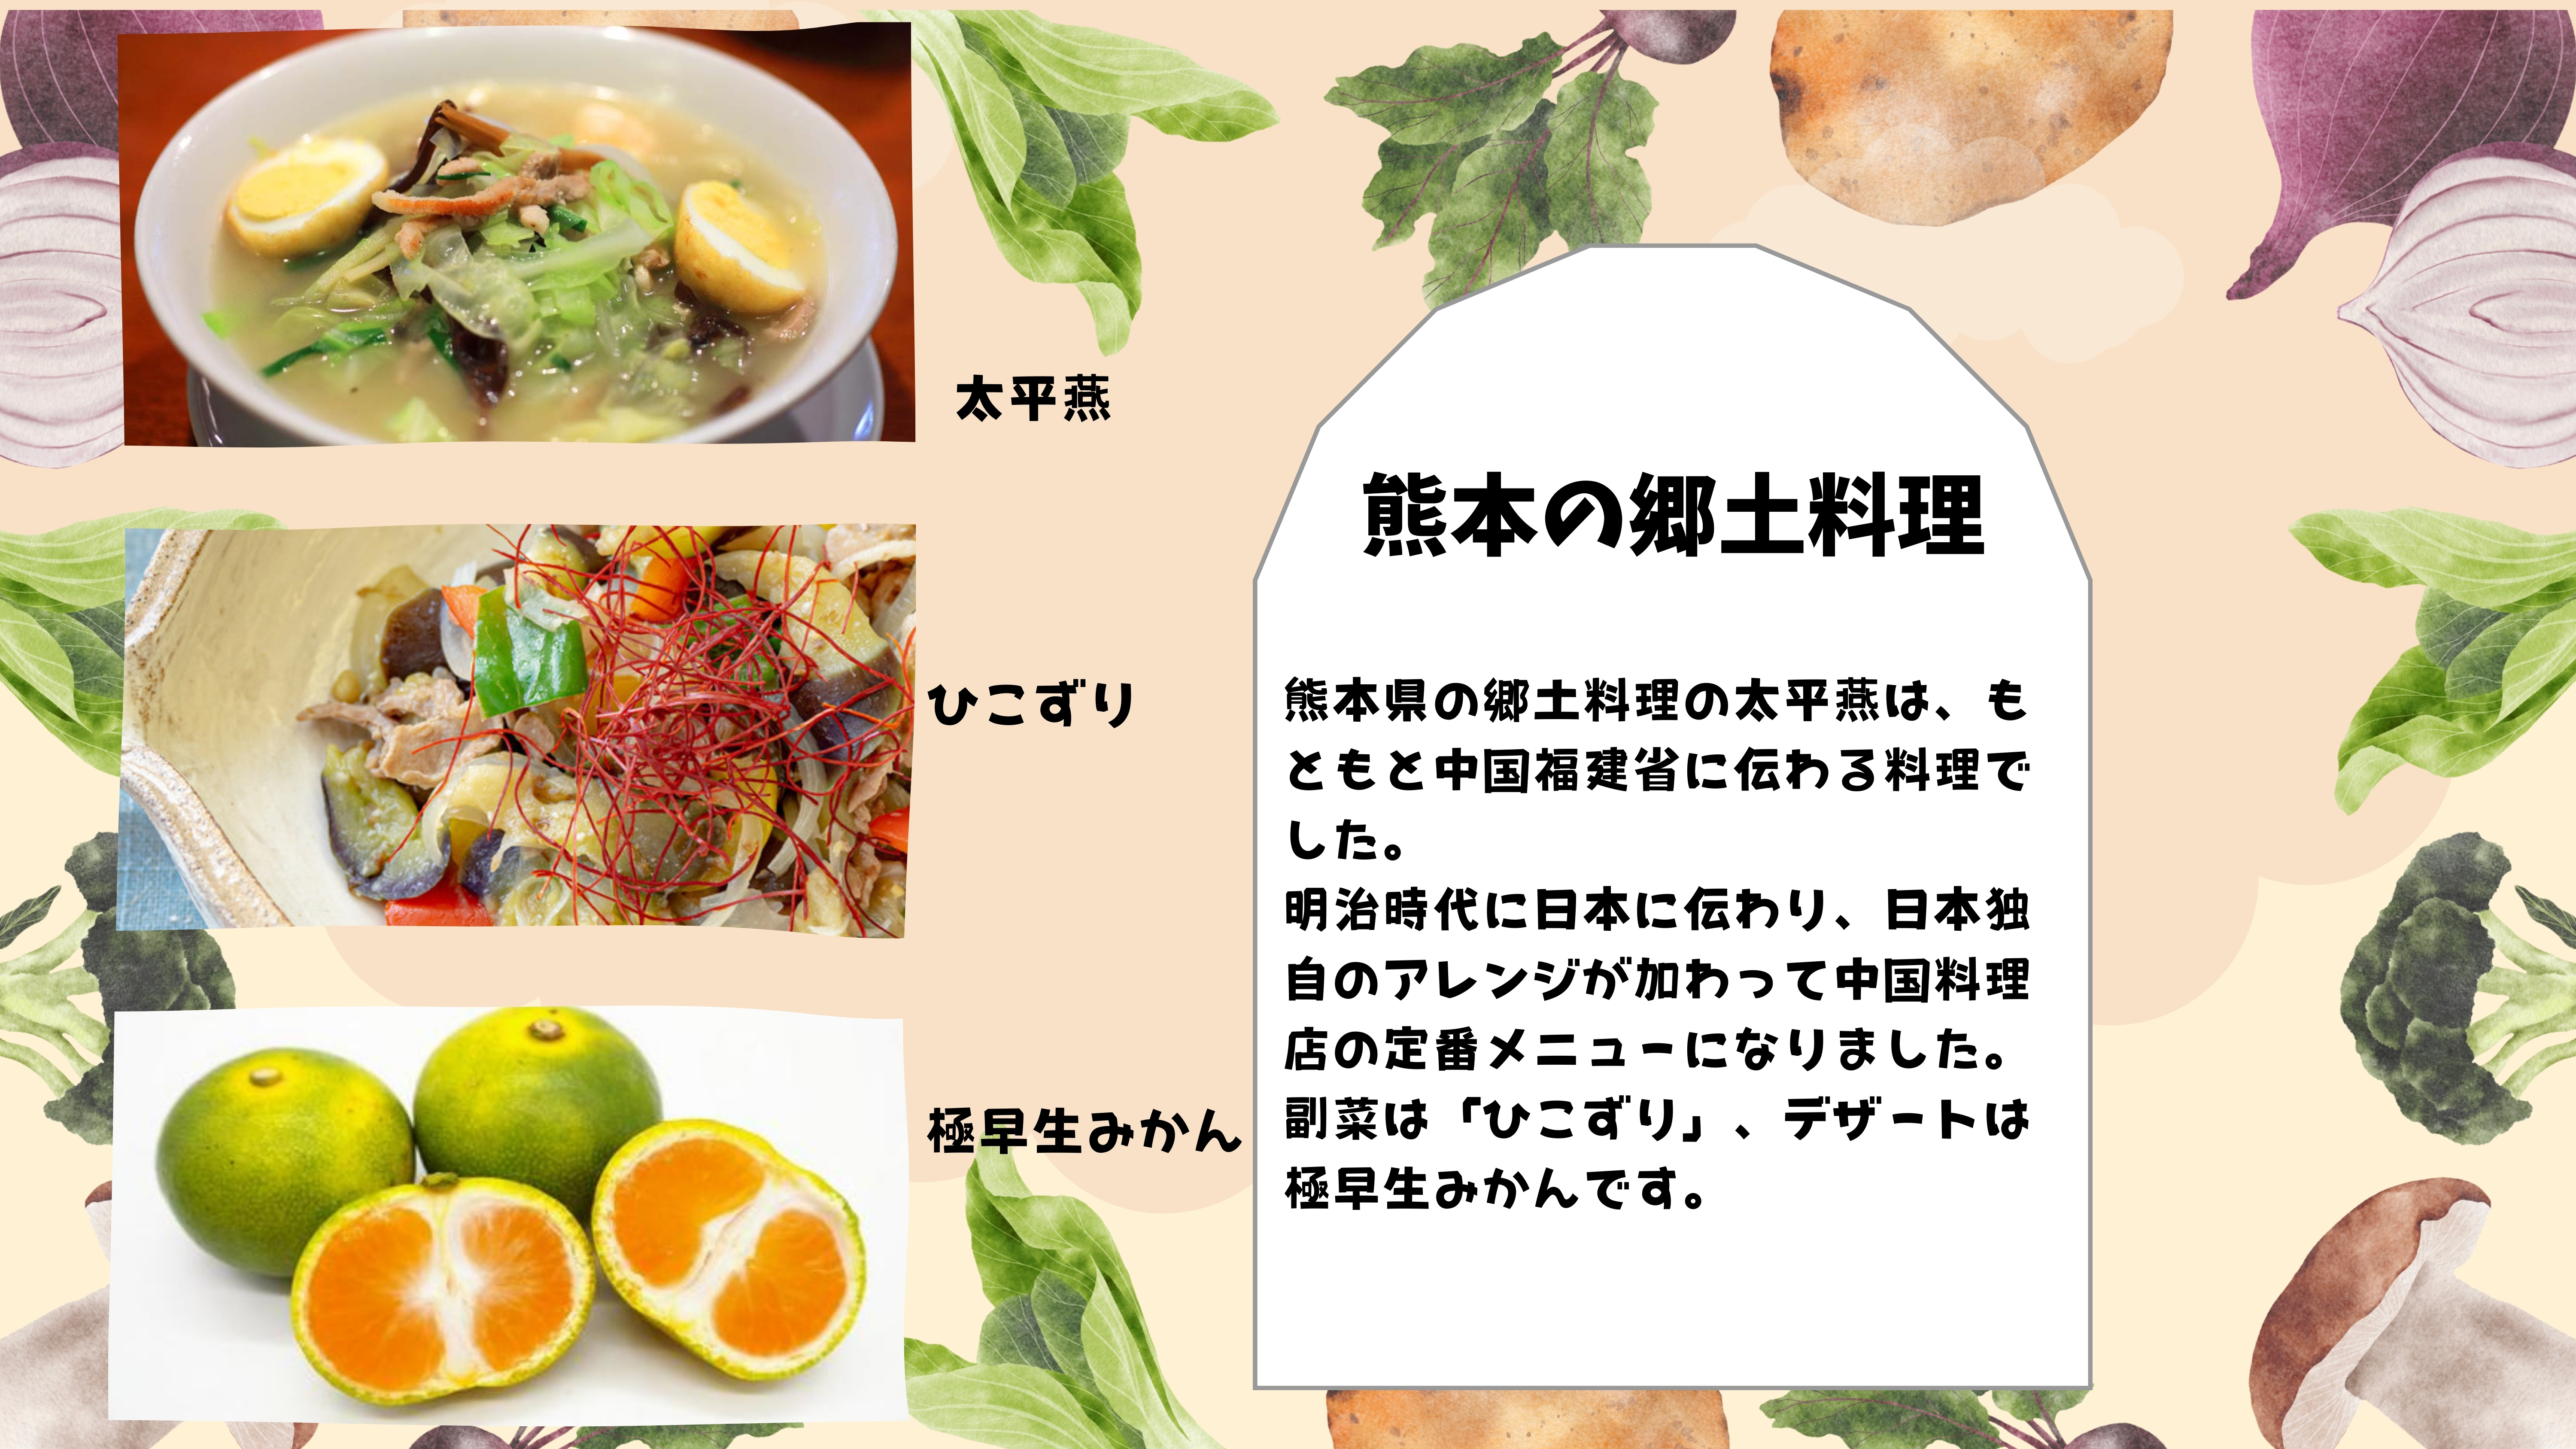 熊本の郷土料理：熊本県の郷土料理の太平燕は、もともと中国福建省に伝わる料理でした。 明治時代に日本に伝わり、日本独自のアレンジが加わって中国料理店の定番メニューになりました。 副菜は「ひこずり」、デザートは極早生みかんです。　タイピーエン、ひこずり、ごくわせみかんの画像